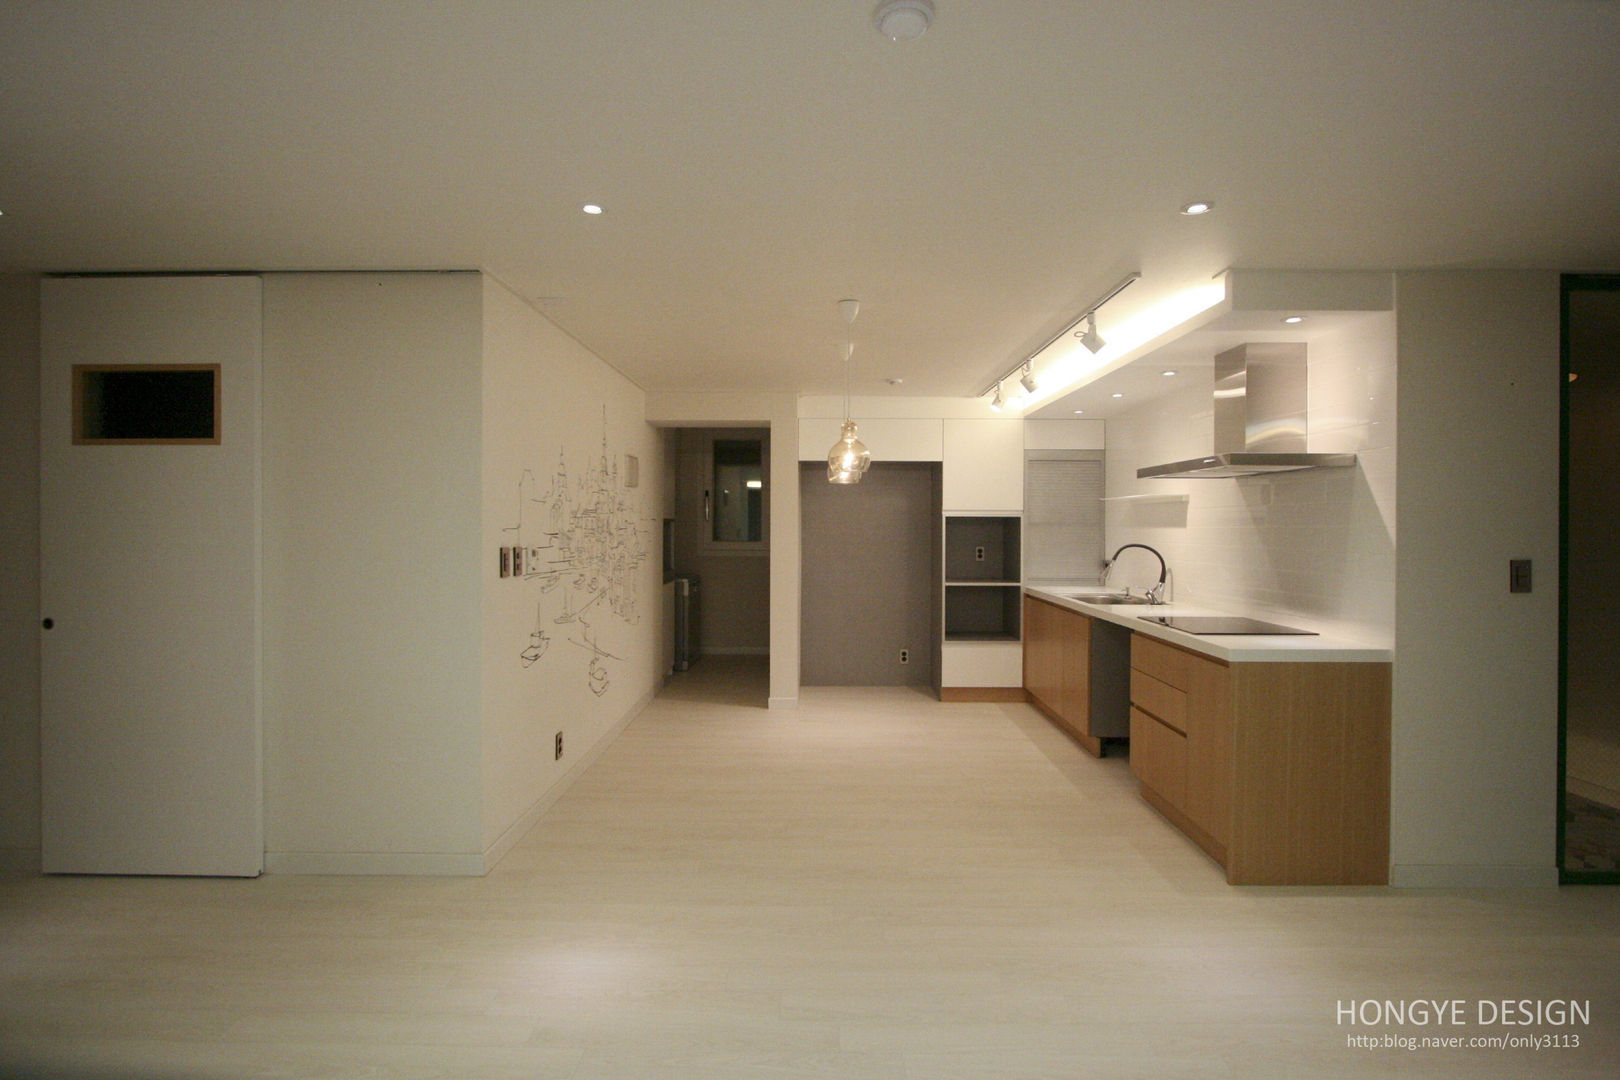 4인가족이 사는 화이트톤의 깔끔한 집_32py, 홍예디자인 홍예디자인 Modern kitchen